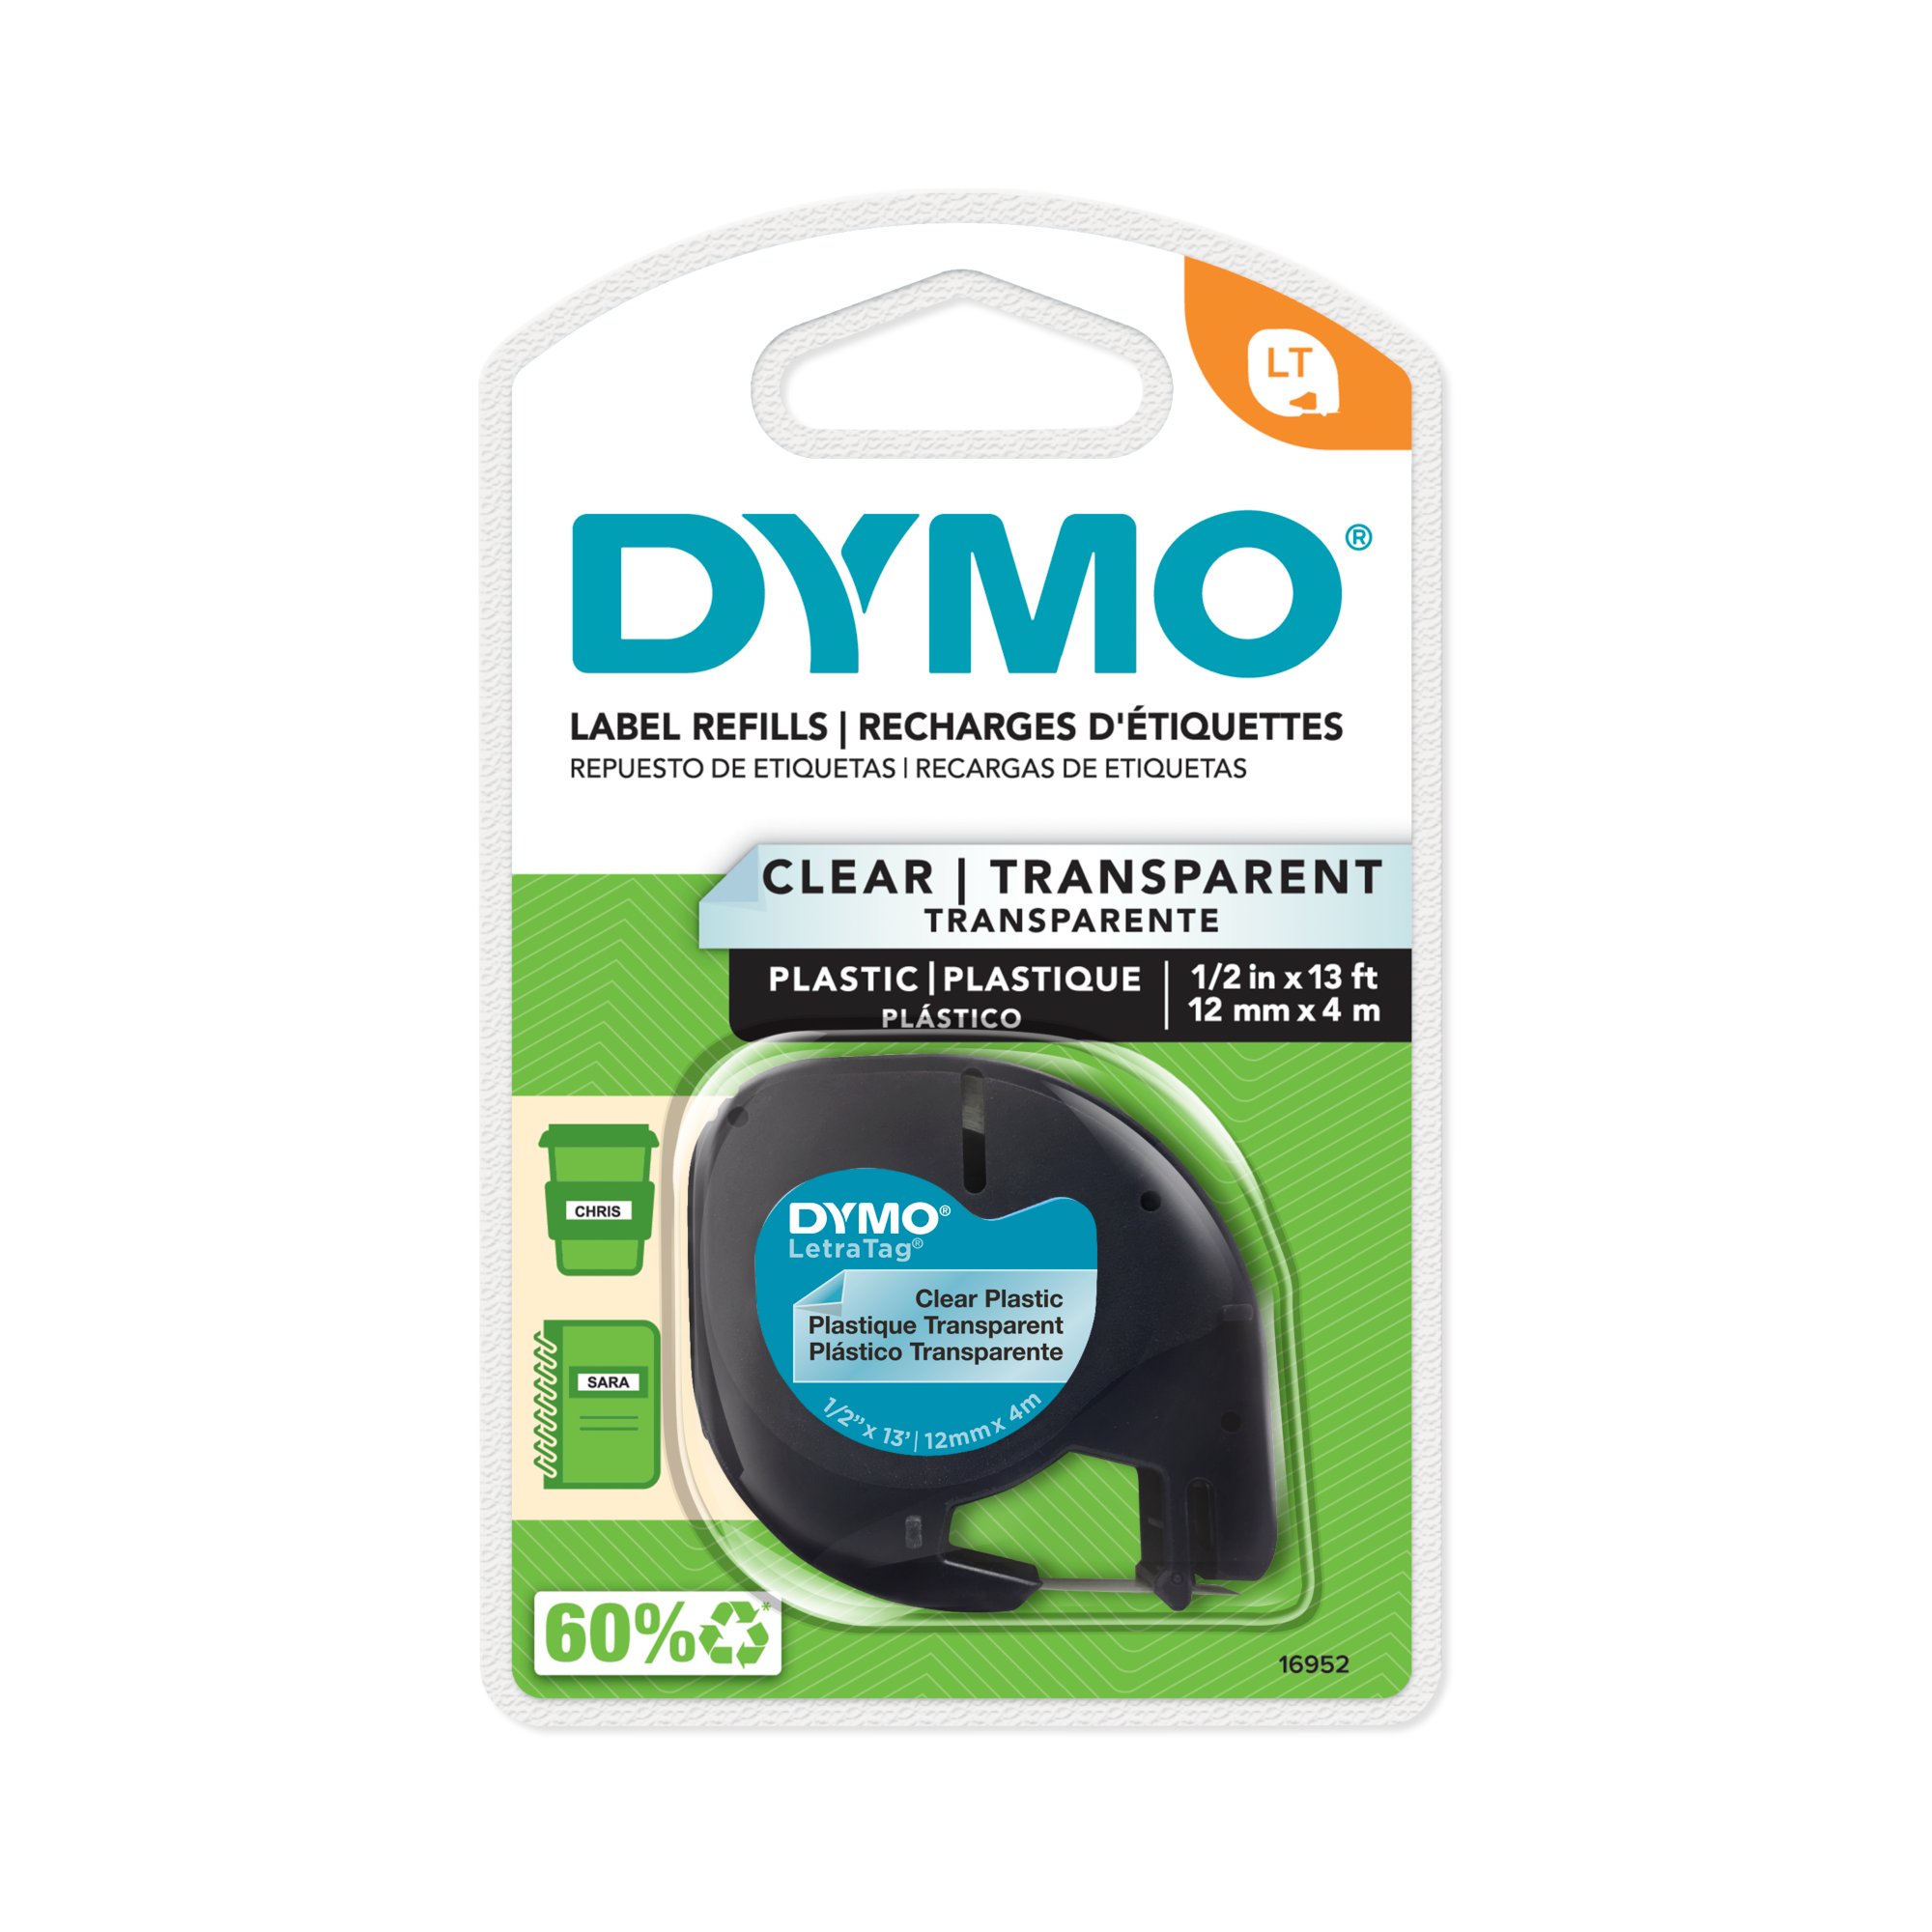 2-Pack Remplacement Pour DYMO LetraTag Recharges Papier Blanc 12mm X 4m  1/2x 13' 91330 10697 LT Étiqueteuse Recharge Étiquette Pour DYMO LetraTag